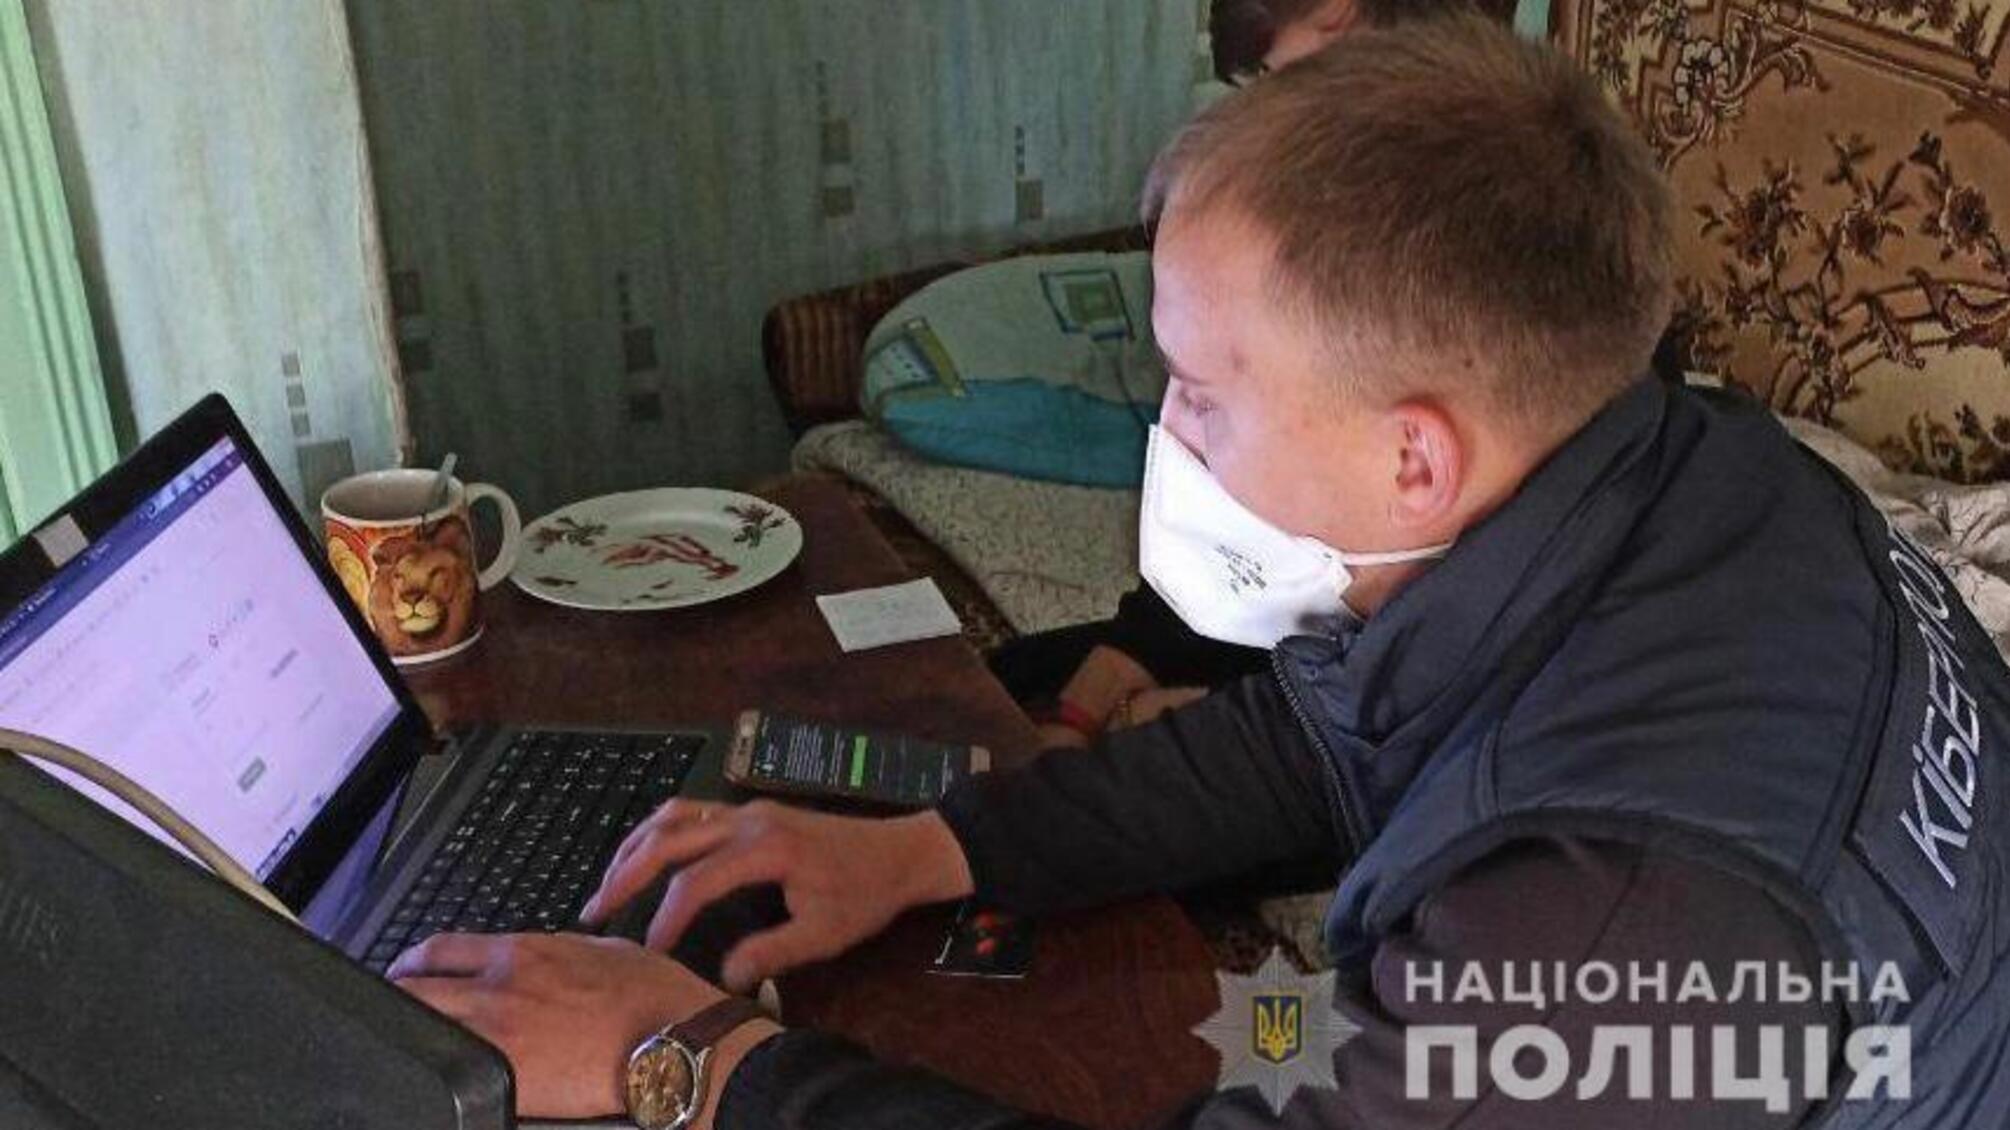 На Луганщині викрито чоловіка, який продавав програму з викрадення даних громадян